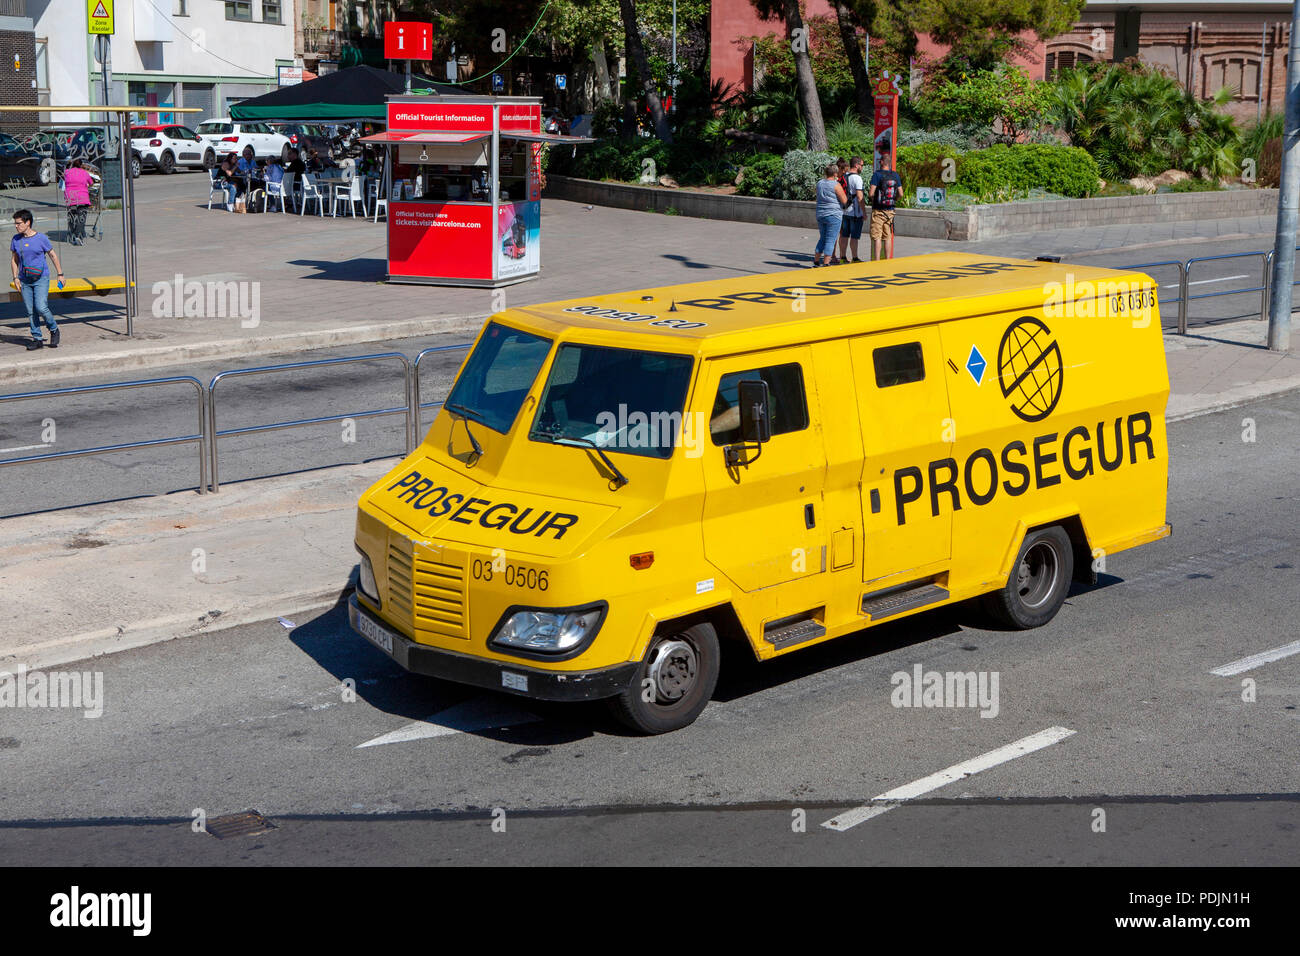 Prosegur gelb Gepanzerte Sicherheit Lkw in Barcelona Katalonien Spanien Stockfoto